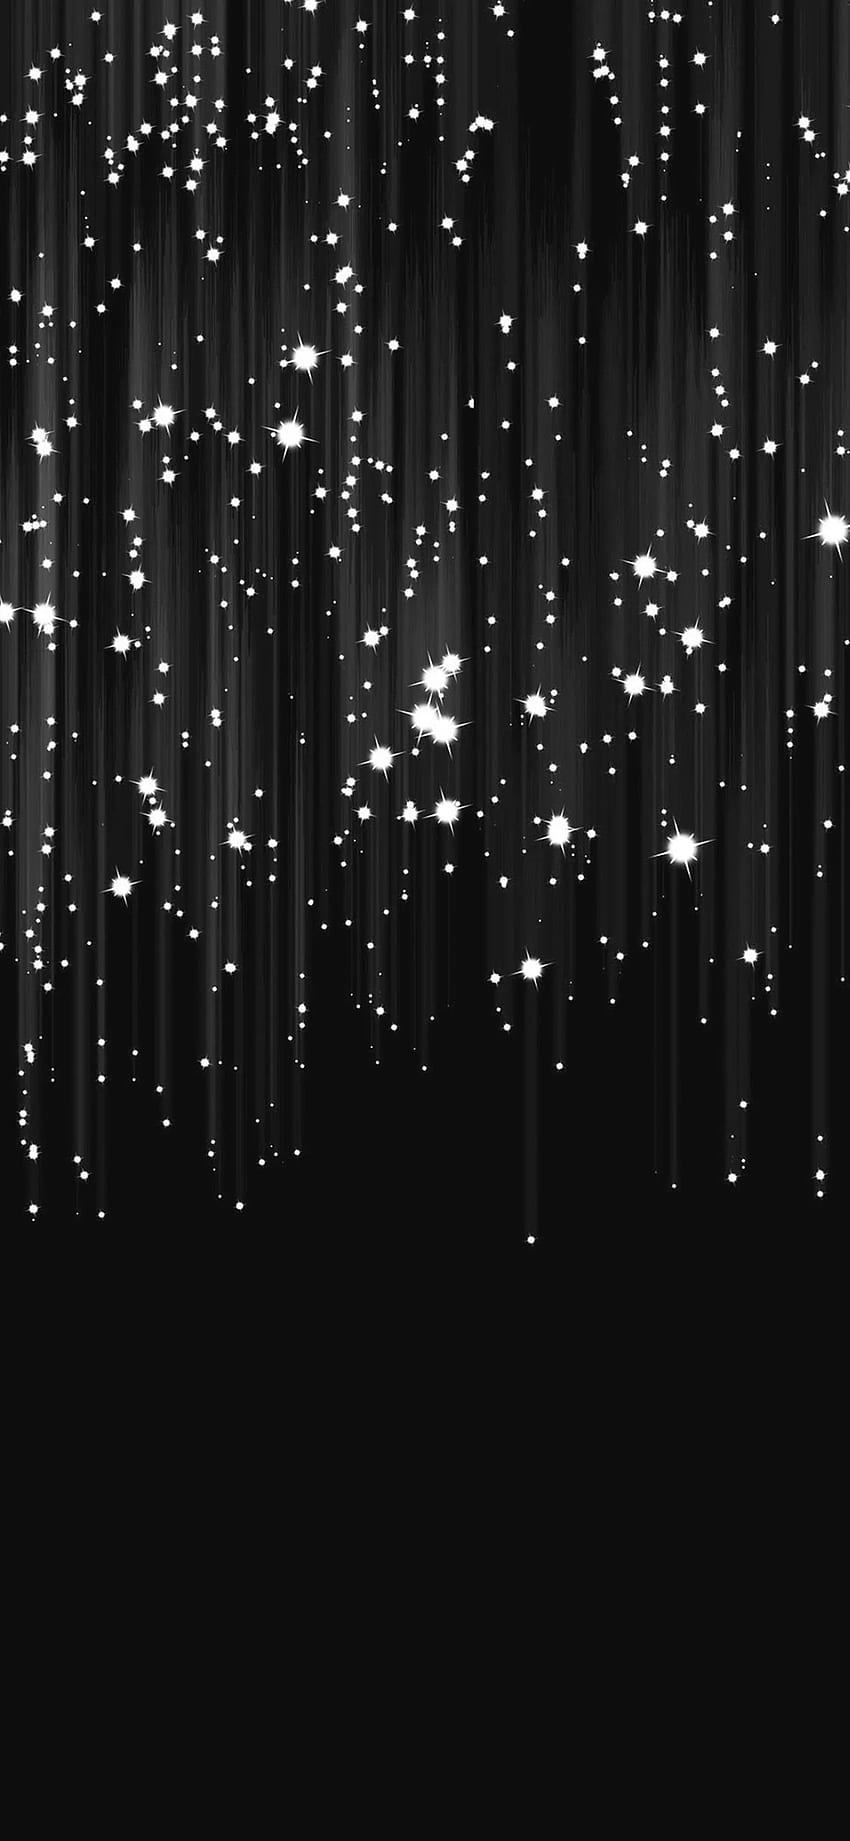 iPhone 8 . hujan meteor bintang gelap, Bintang Hitam wallpaper ponsel HD